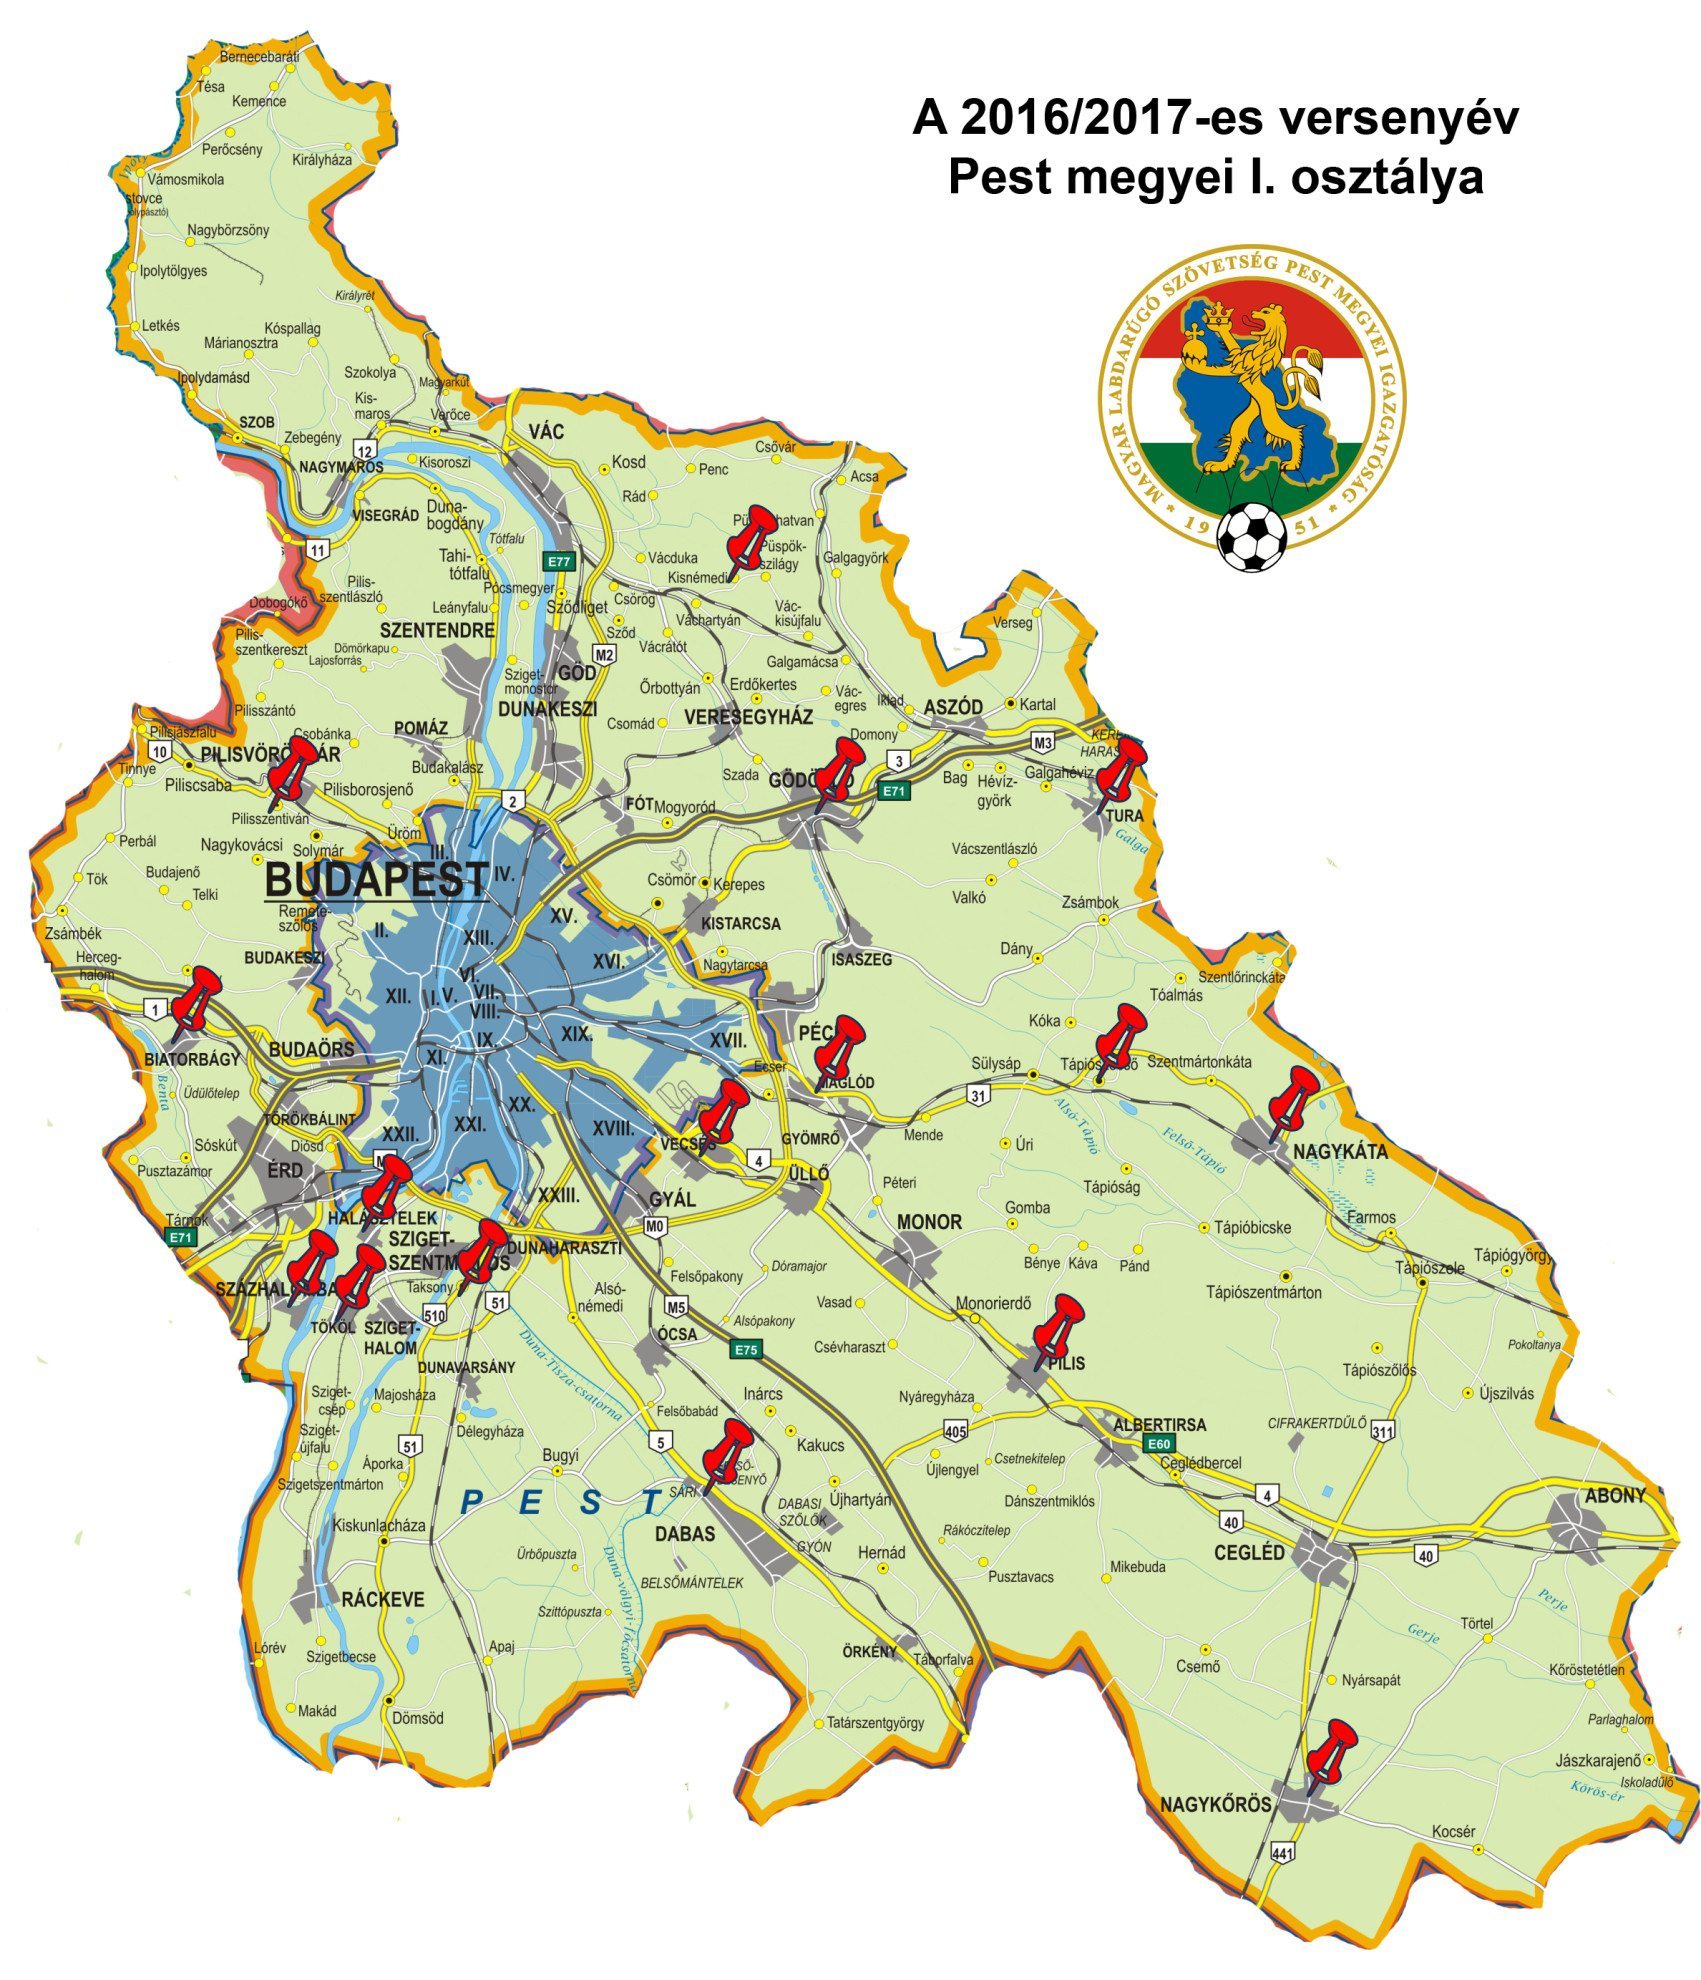 budapest és pest megye térkép MLSZ Pest Megyei Igazgatóság   Elkészült a Pest megyei I. és II  budapest és pest megye térkép